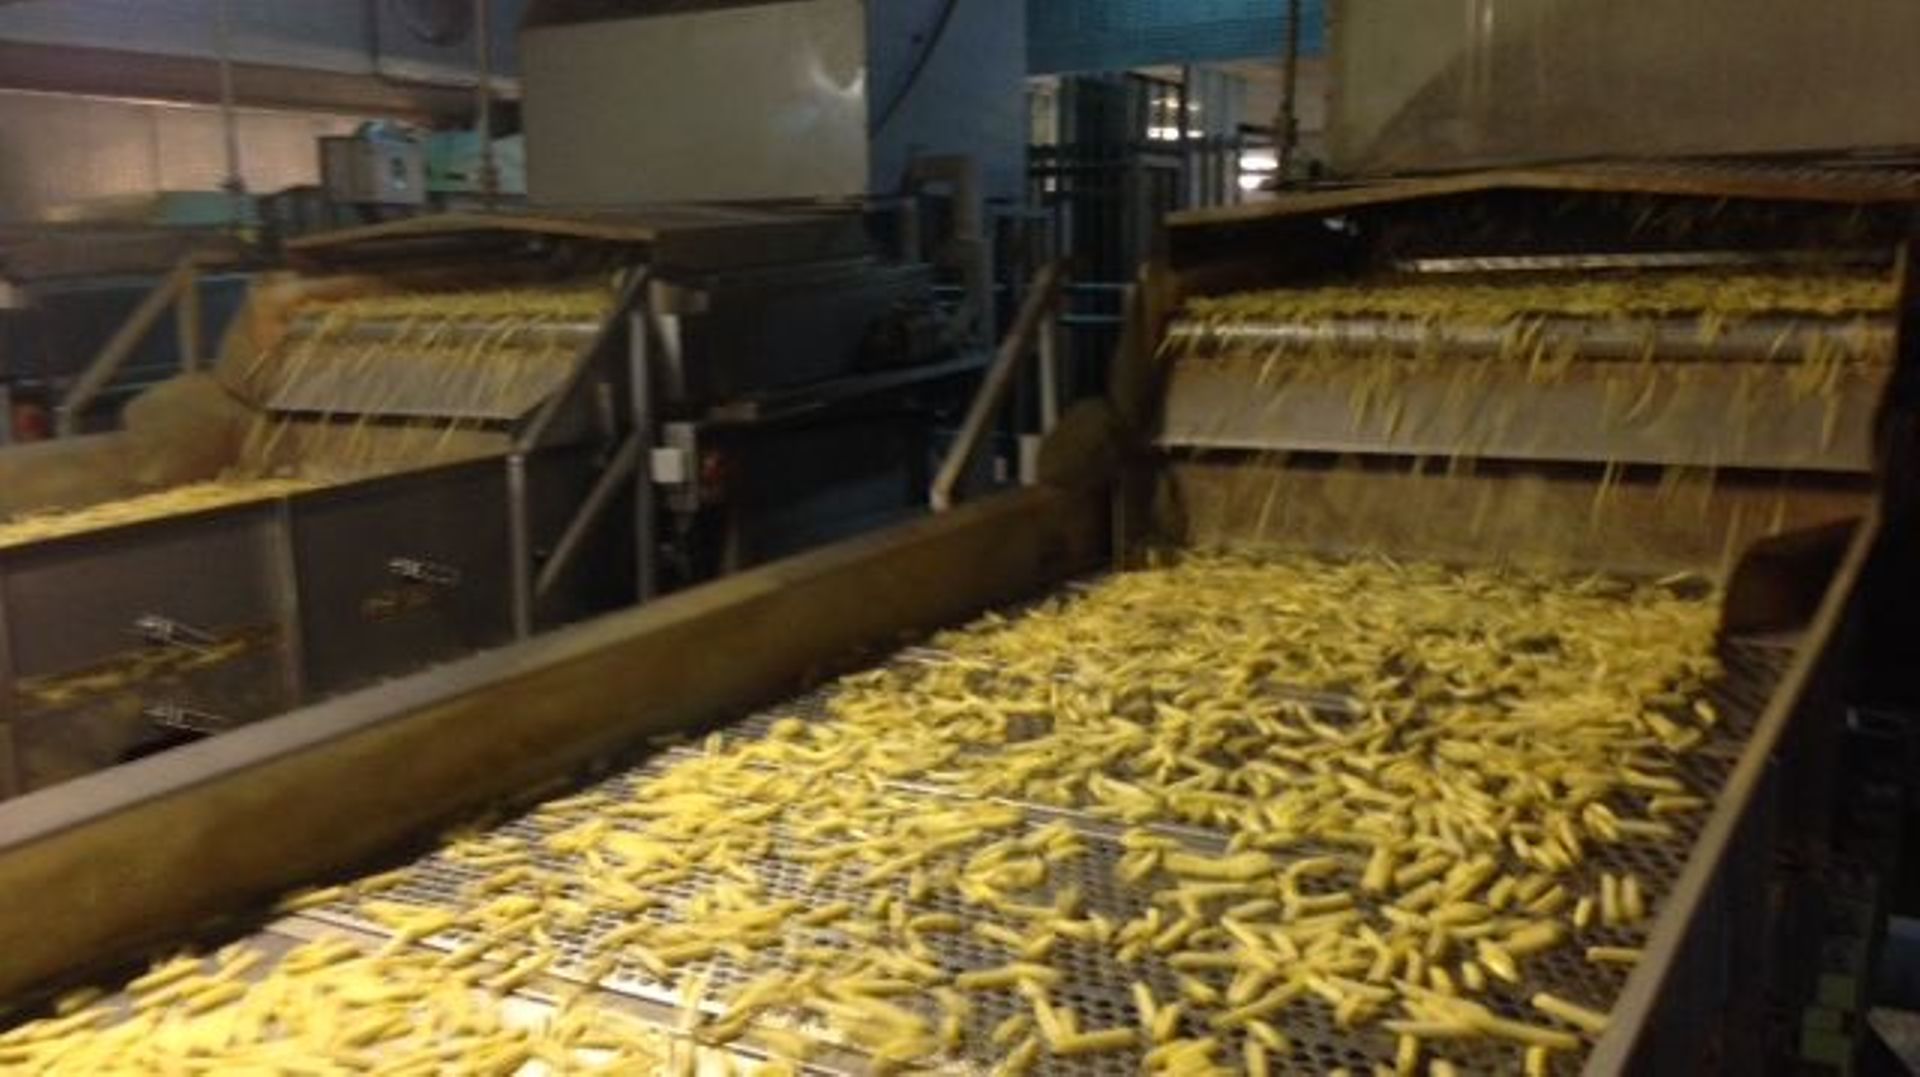 L'usine de transformation de pommes de terre de Leuze-en-Hainaut va devenir l’usine phare du groupe Mc Cain dans le monde